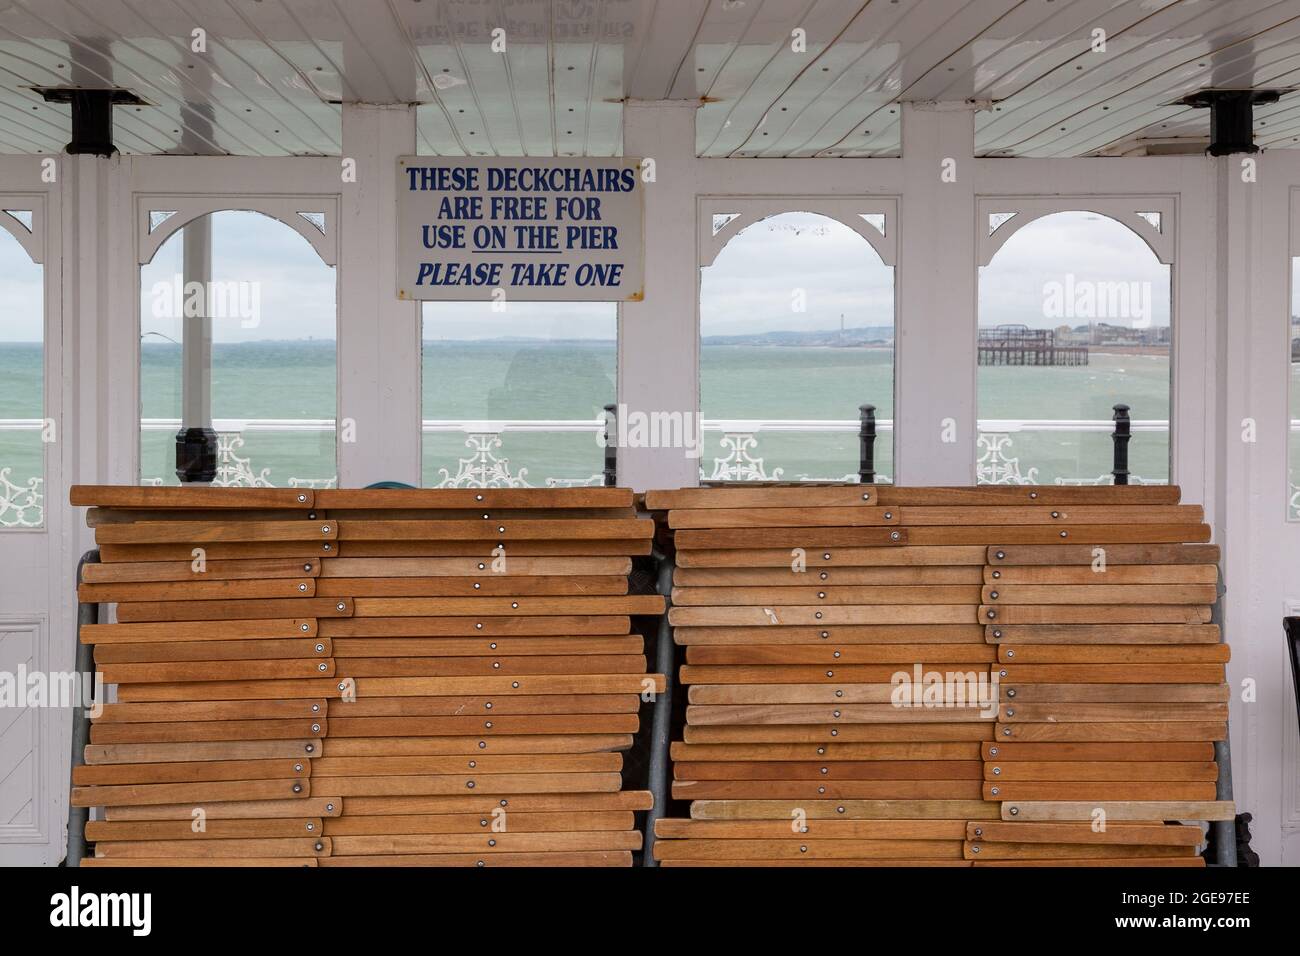 Un cartello sopra le sedie a sdraio su un molo che indica che le sedie a sdraio sono gratuite da utilizzare sul molo sul mare britannico Foto Stock